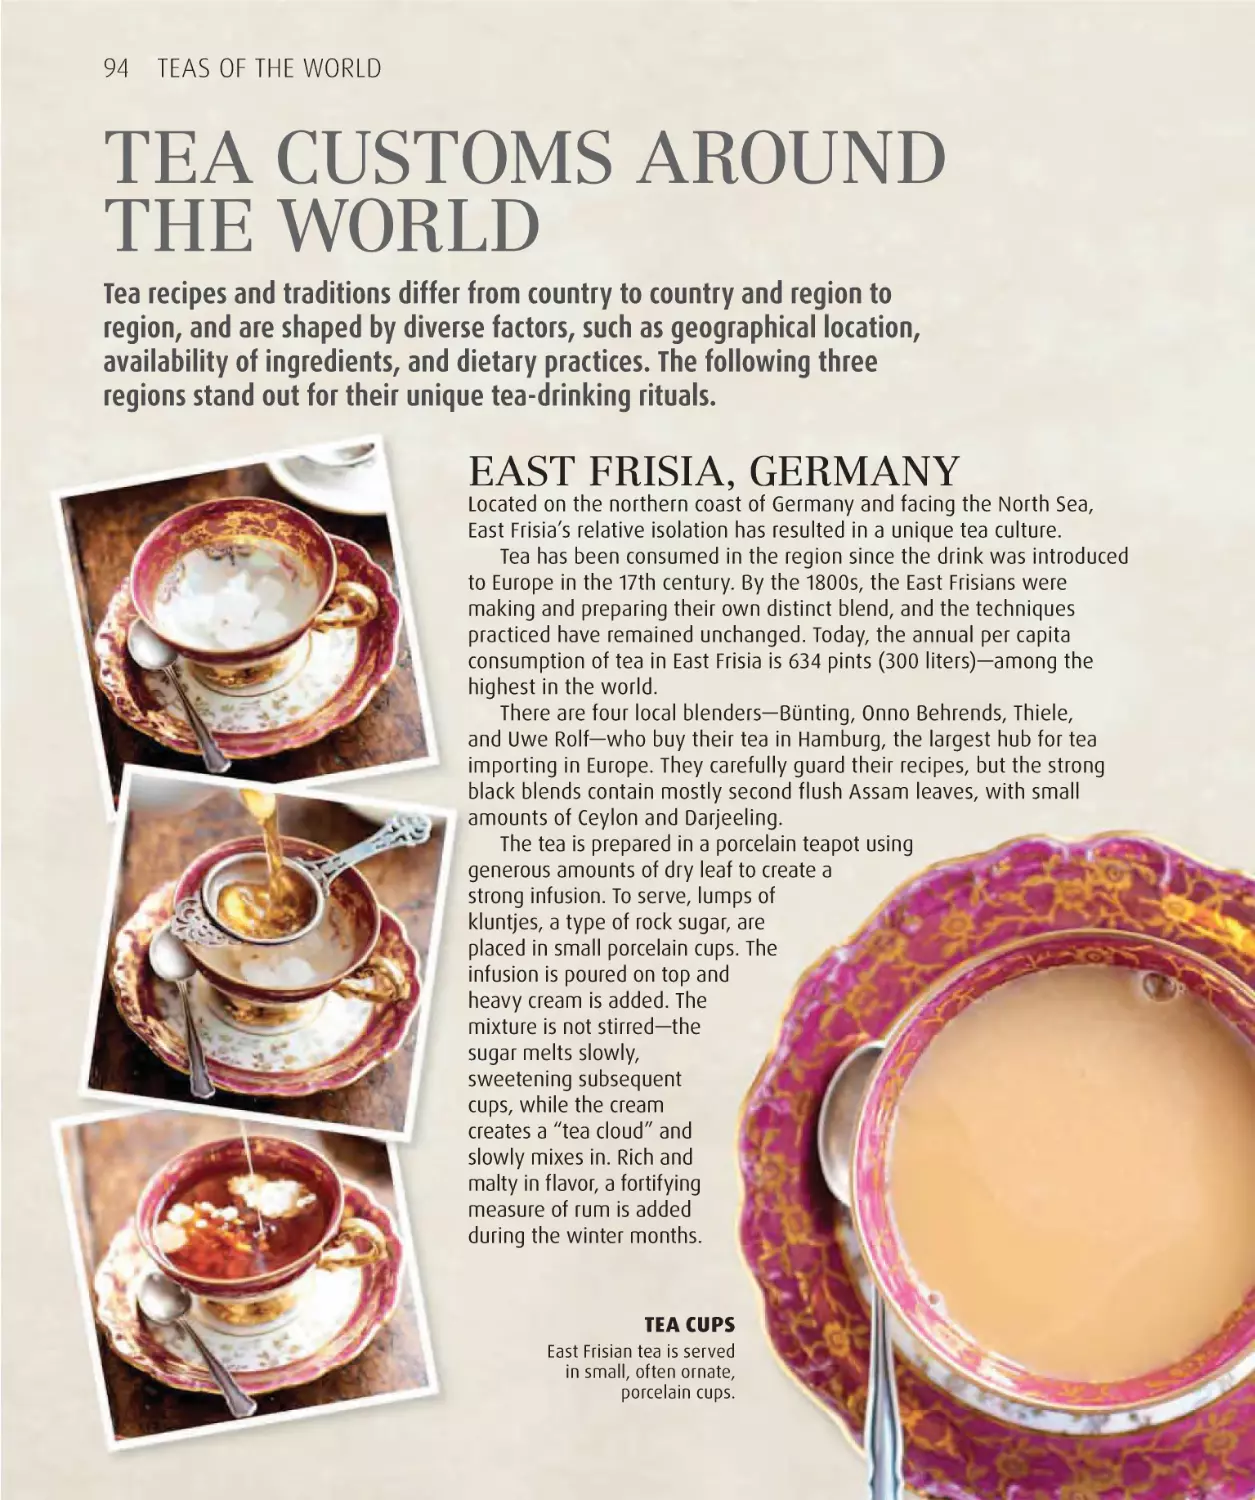 Tea customs around the world 94